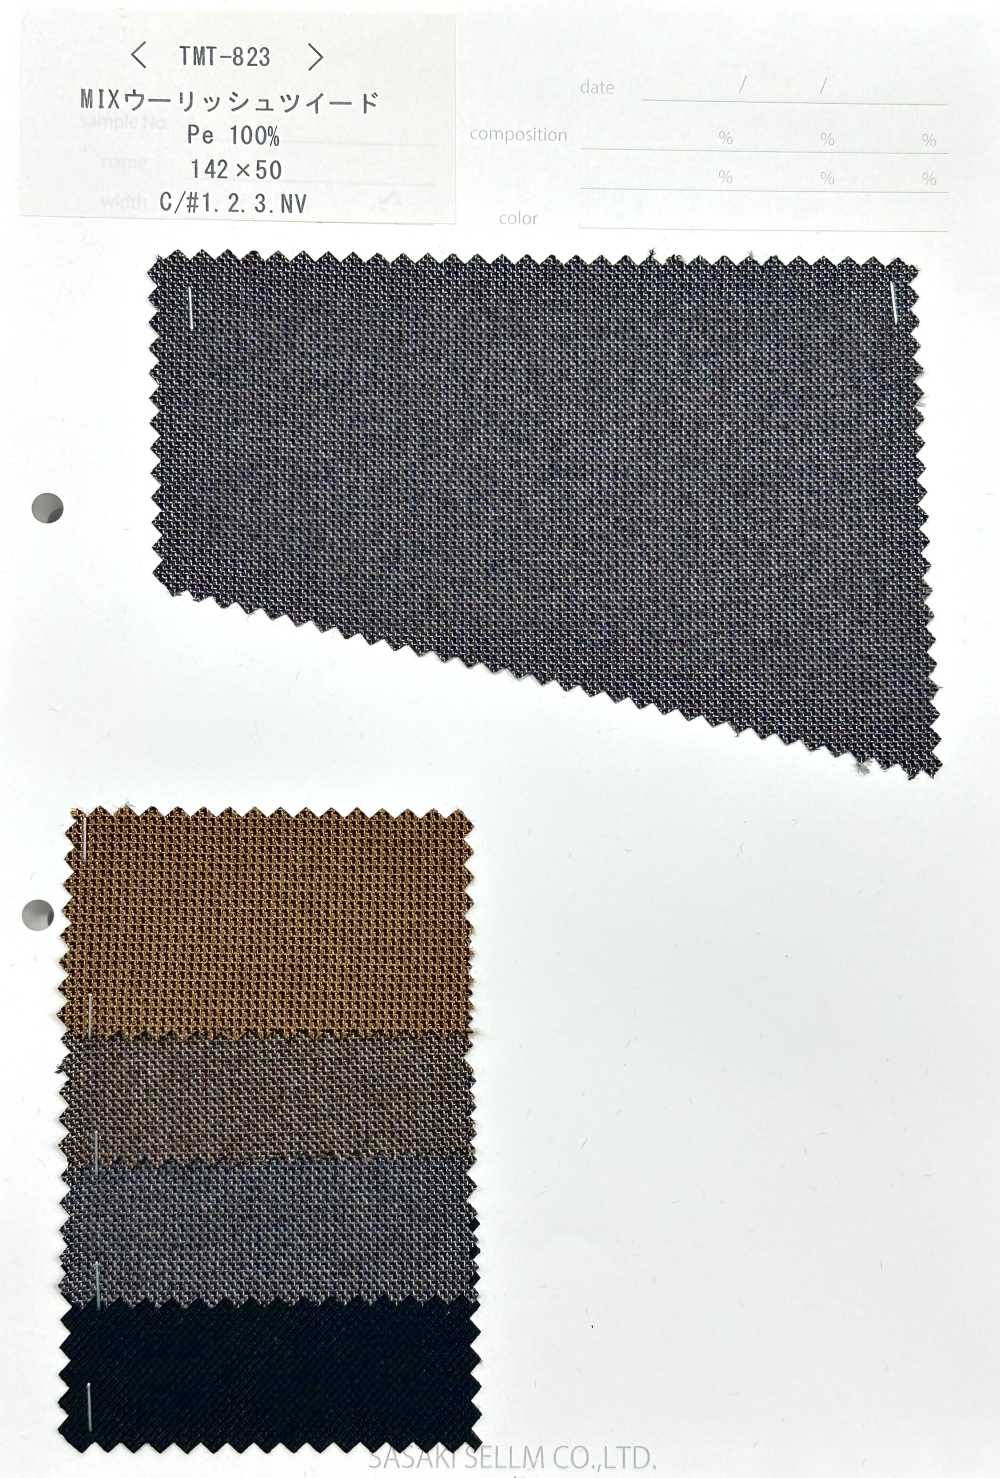 TMT-823 MIX Tweed Lã[Têxtil / Tecido] SASAKISELLM